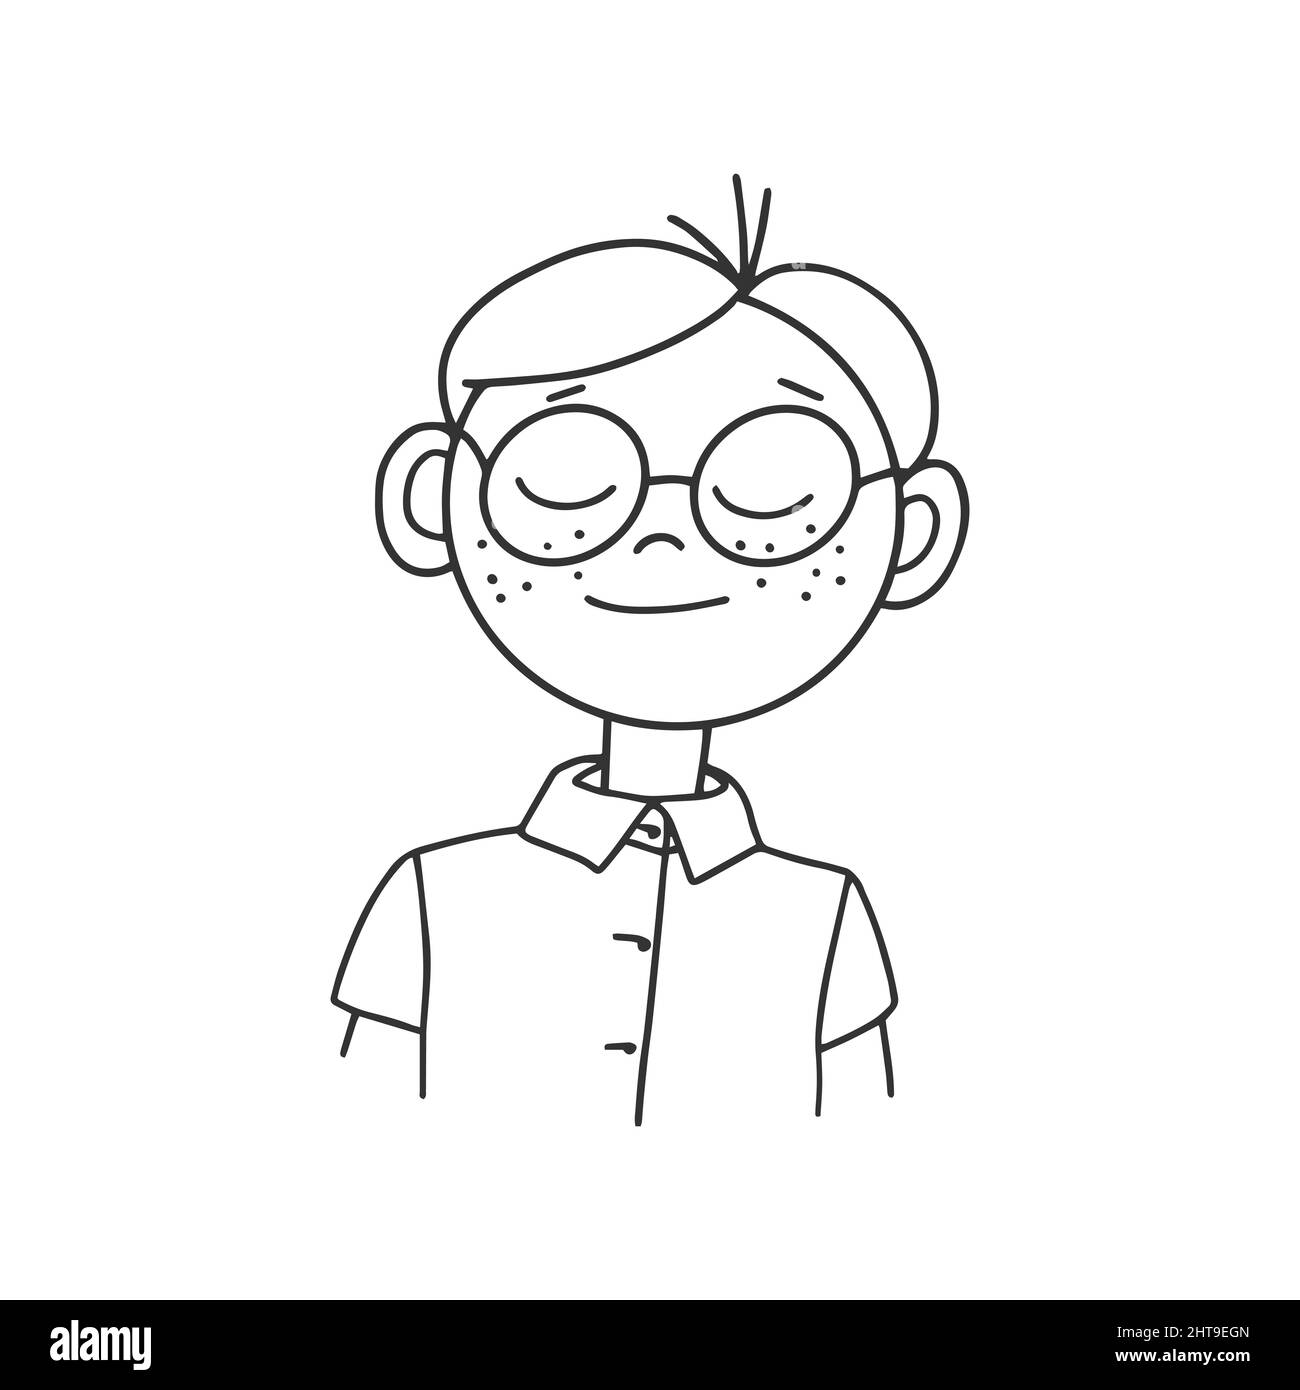 Konturzeichnung eines Zeichentrickfilters mit Brille. Doodle StyleKonturzeichnung eines Zeichentrickfilms in einer Brille mit Emotionen im Gesicht. Doodle-Stil Stock Vektor